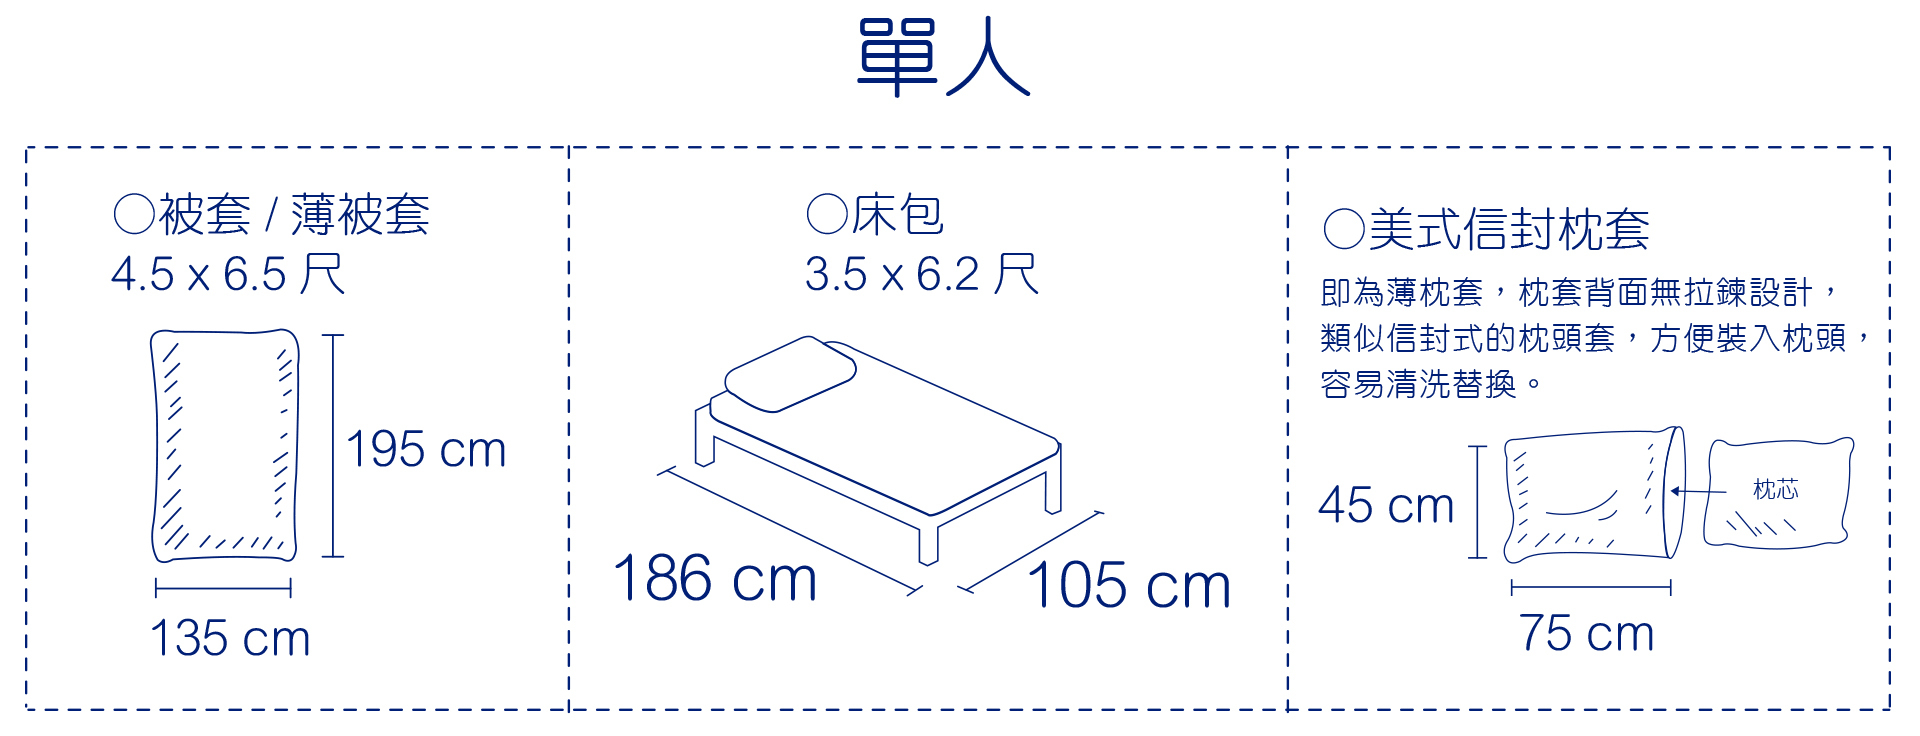 床包尺寸介紹